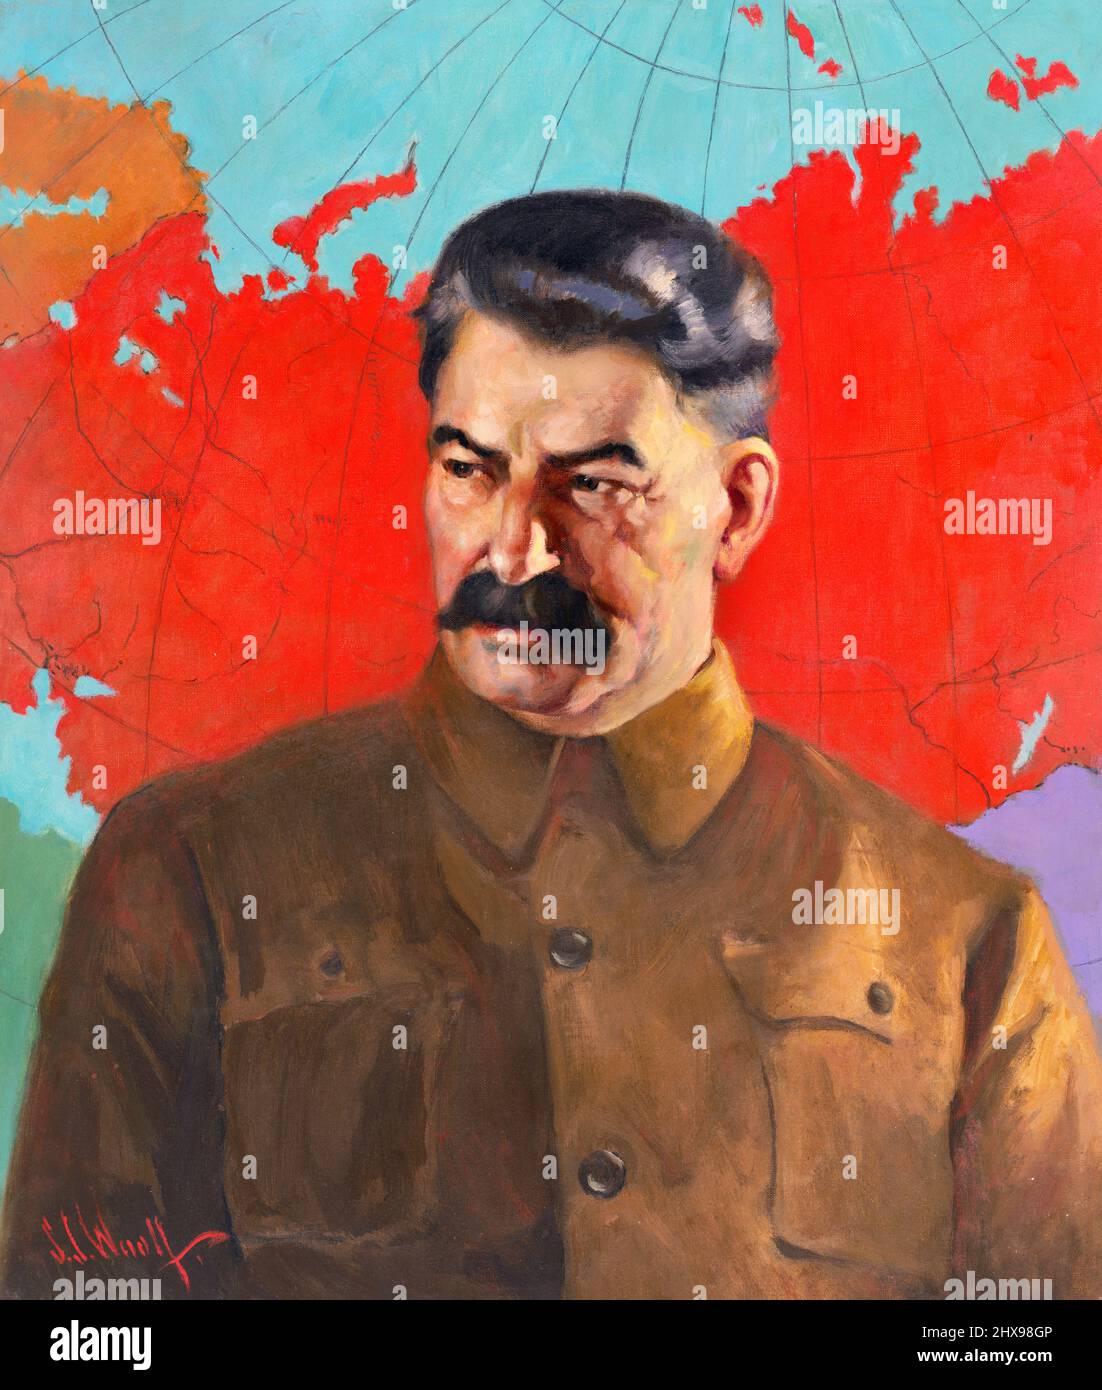 Joseph Stalin, Premier e Segretario Generale del Comitato Centrale del Partito Comunista dell'Unione Sovietica. Ritratto di Samuel Johnson Woolf, olio su tela, 1937 Foto Stock